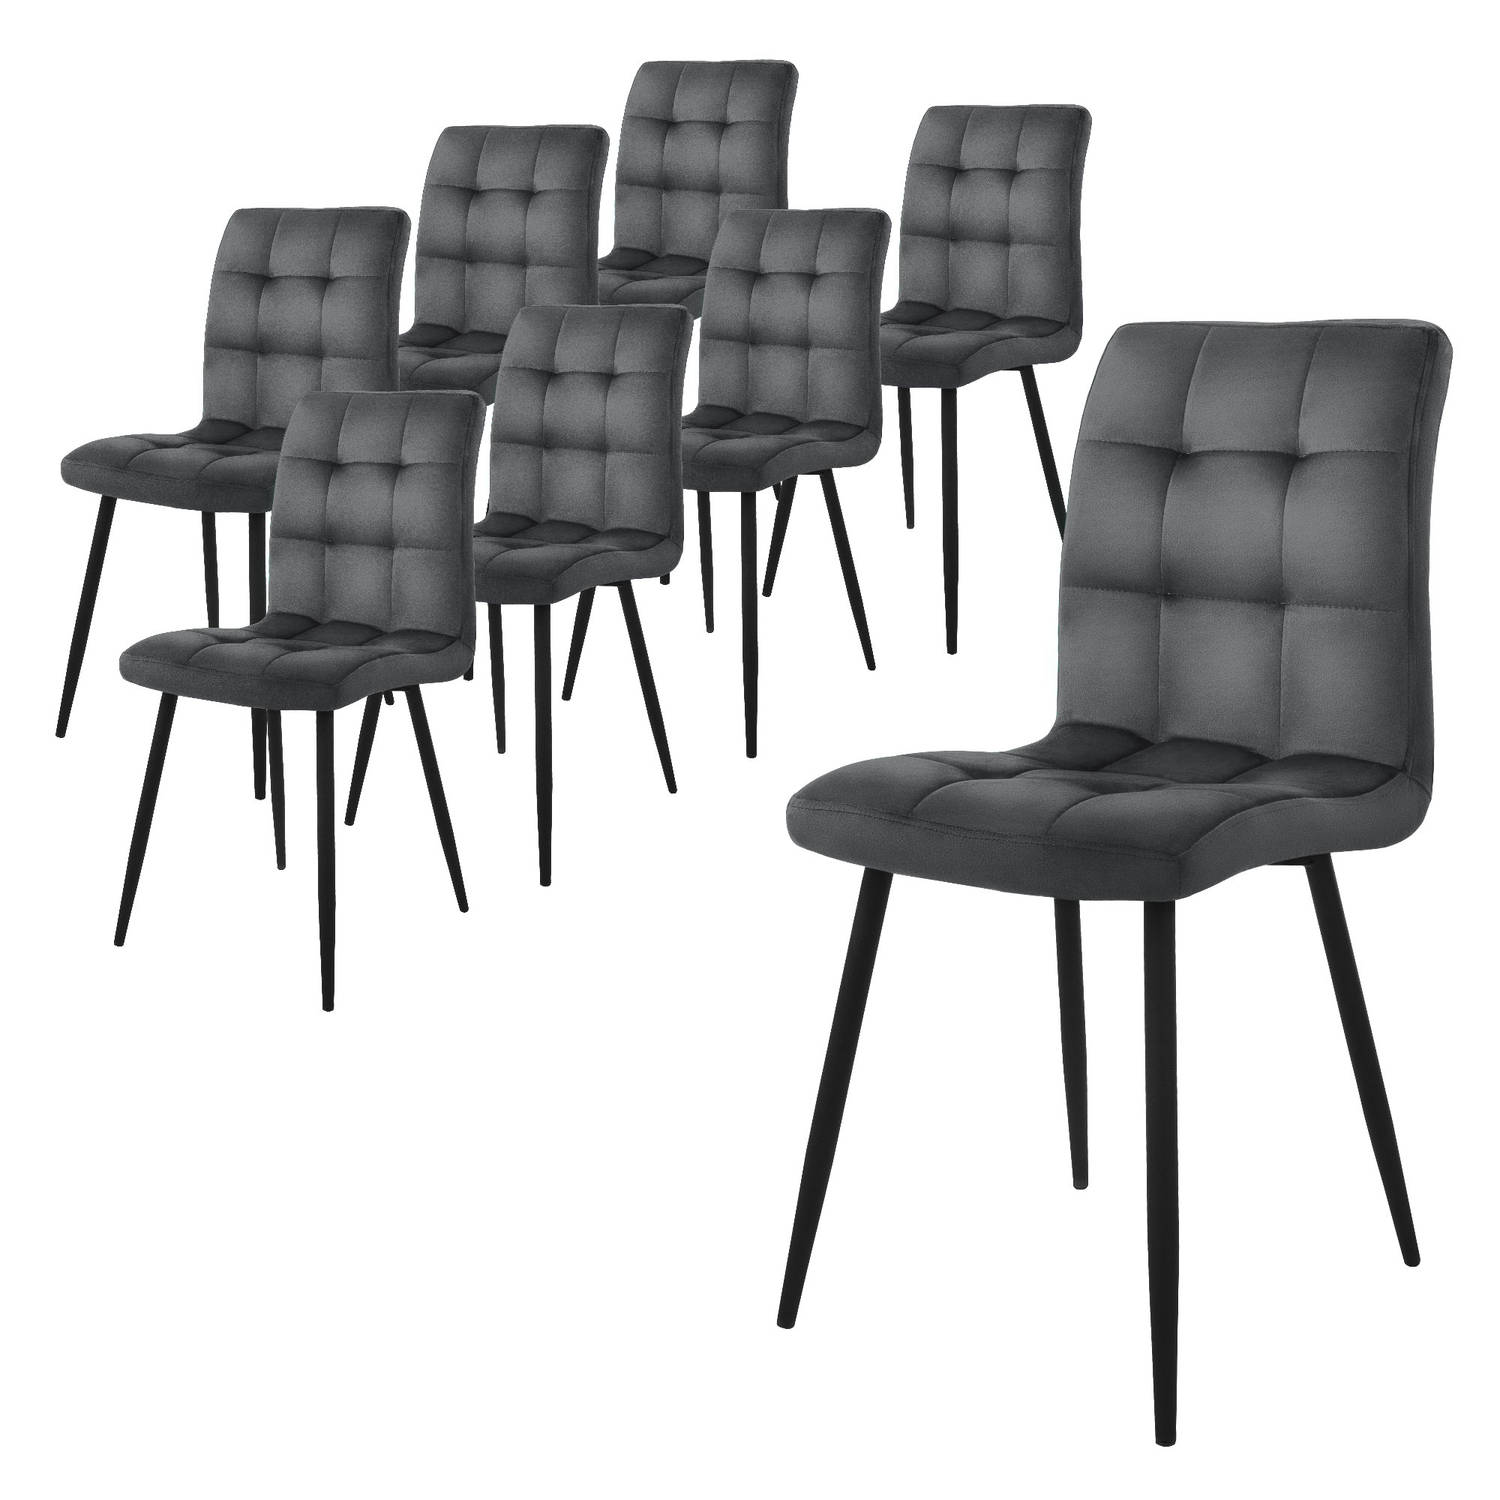 ML-Design eetkamerstoelen set van 8, antraciet, keukenstoel met fluwelen bekleding, woonkamerstoel met rugleuning, gestoffeerde stoel met metalen poten, ergonomische stoel voor eet